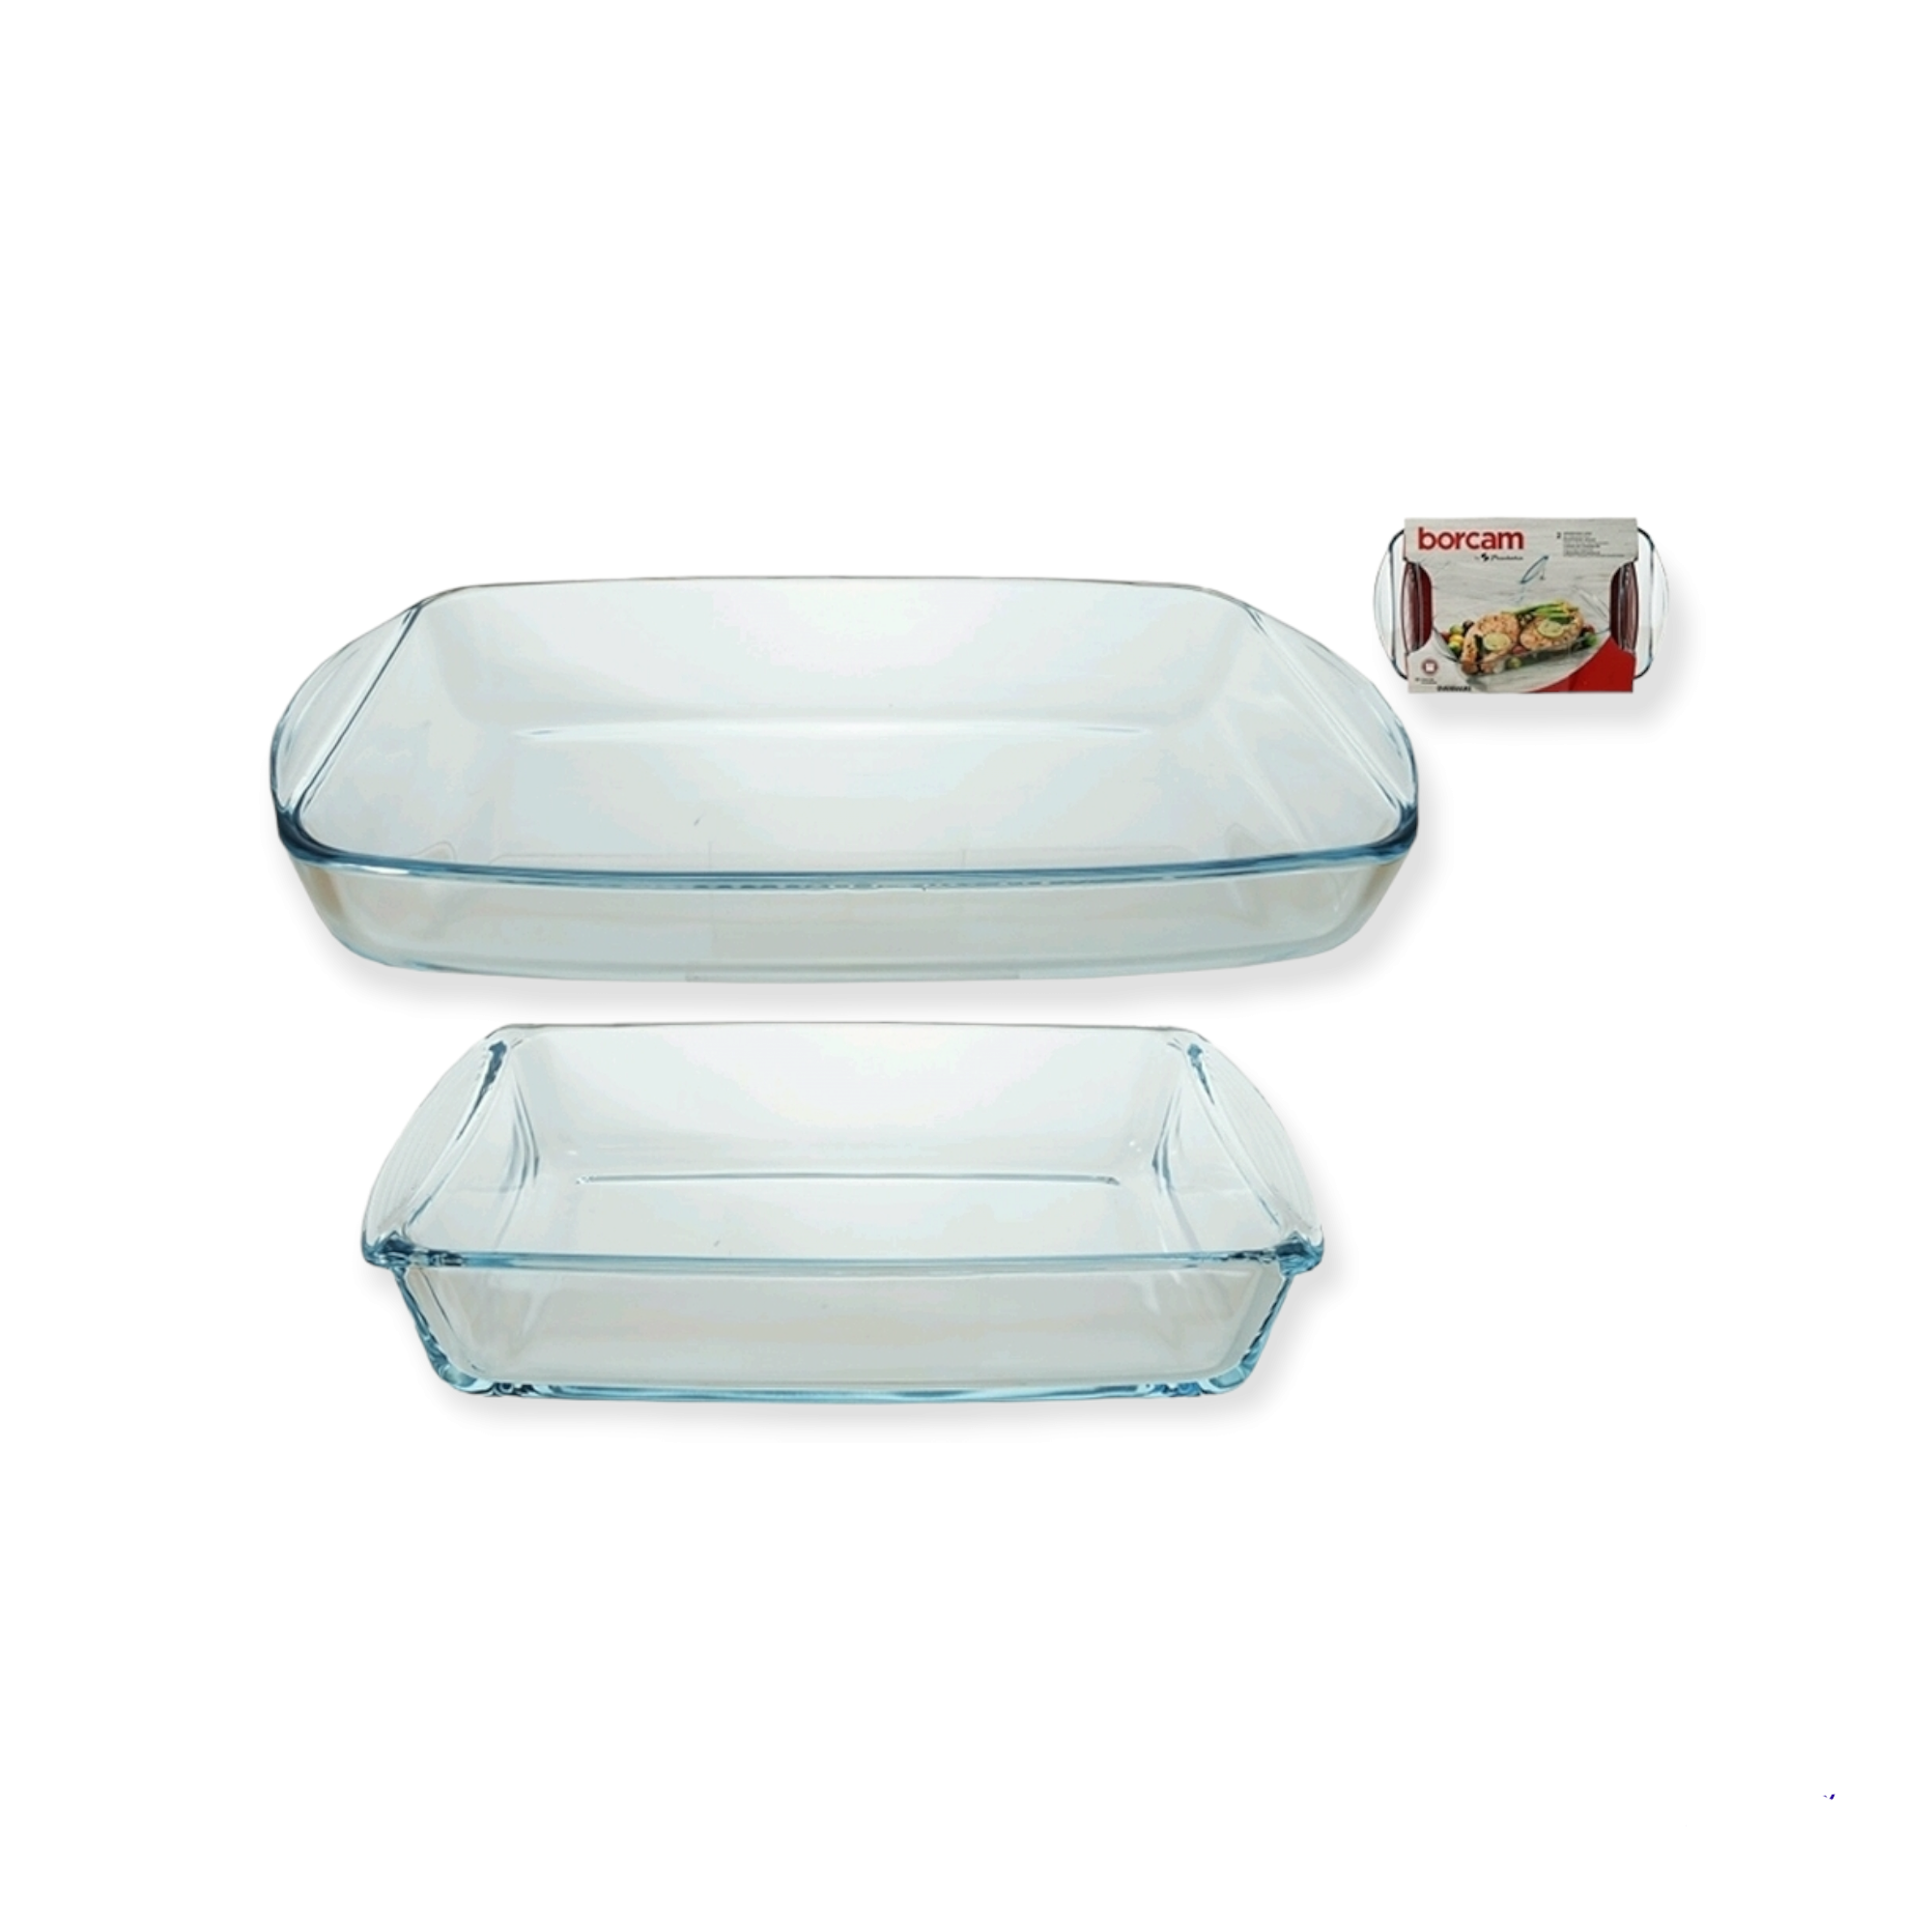 Borcam Glass Serving Dish Casserole 2pc Set 23050